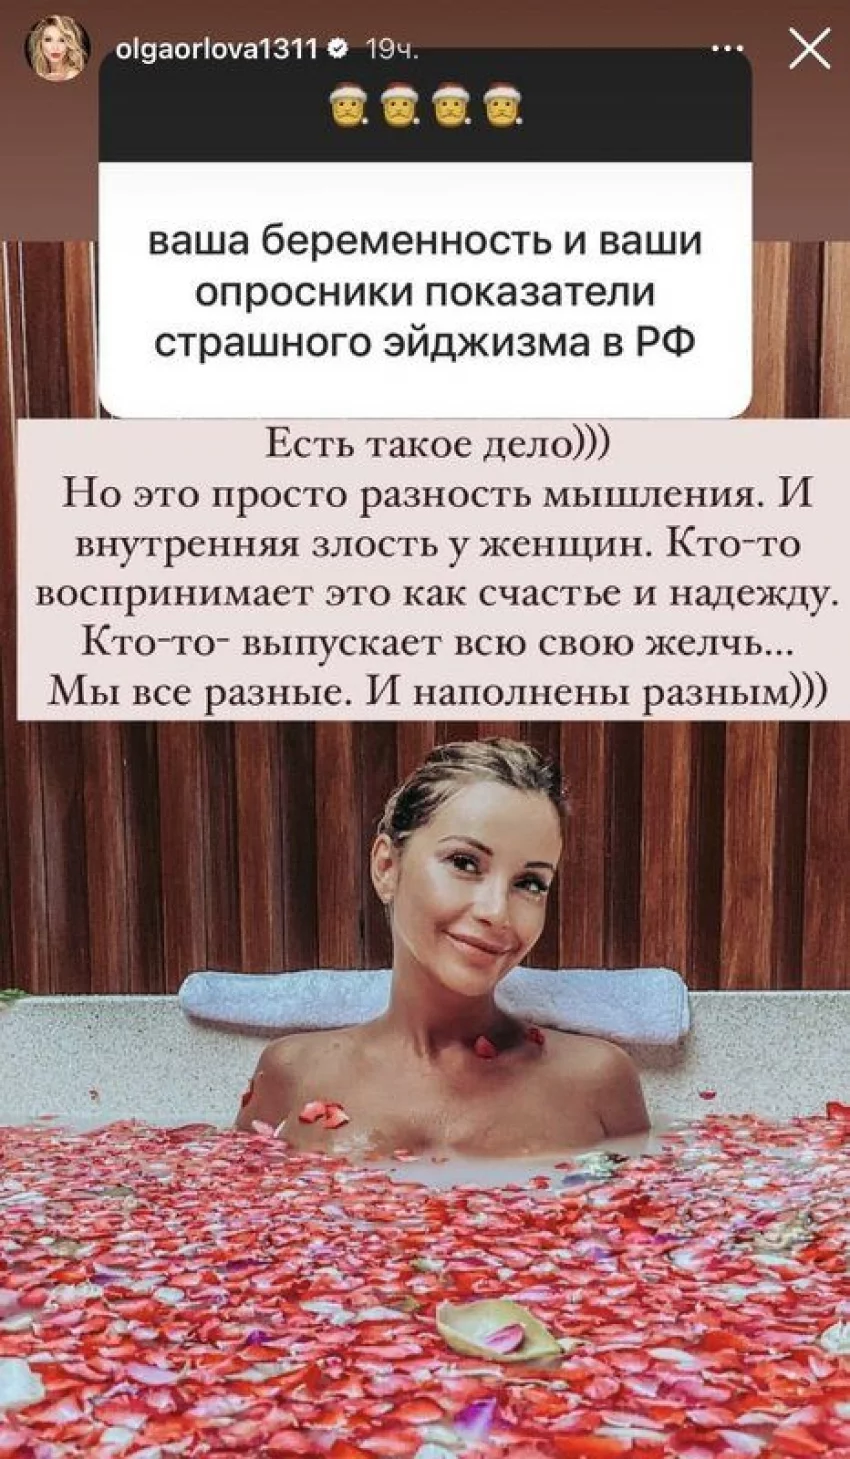 45-летняя певица Ольга Орлова объяснила, почему женщины со злостью относятся к ее беременности